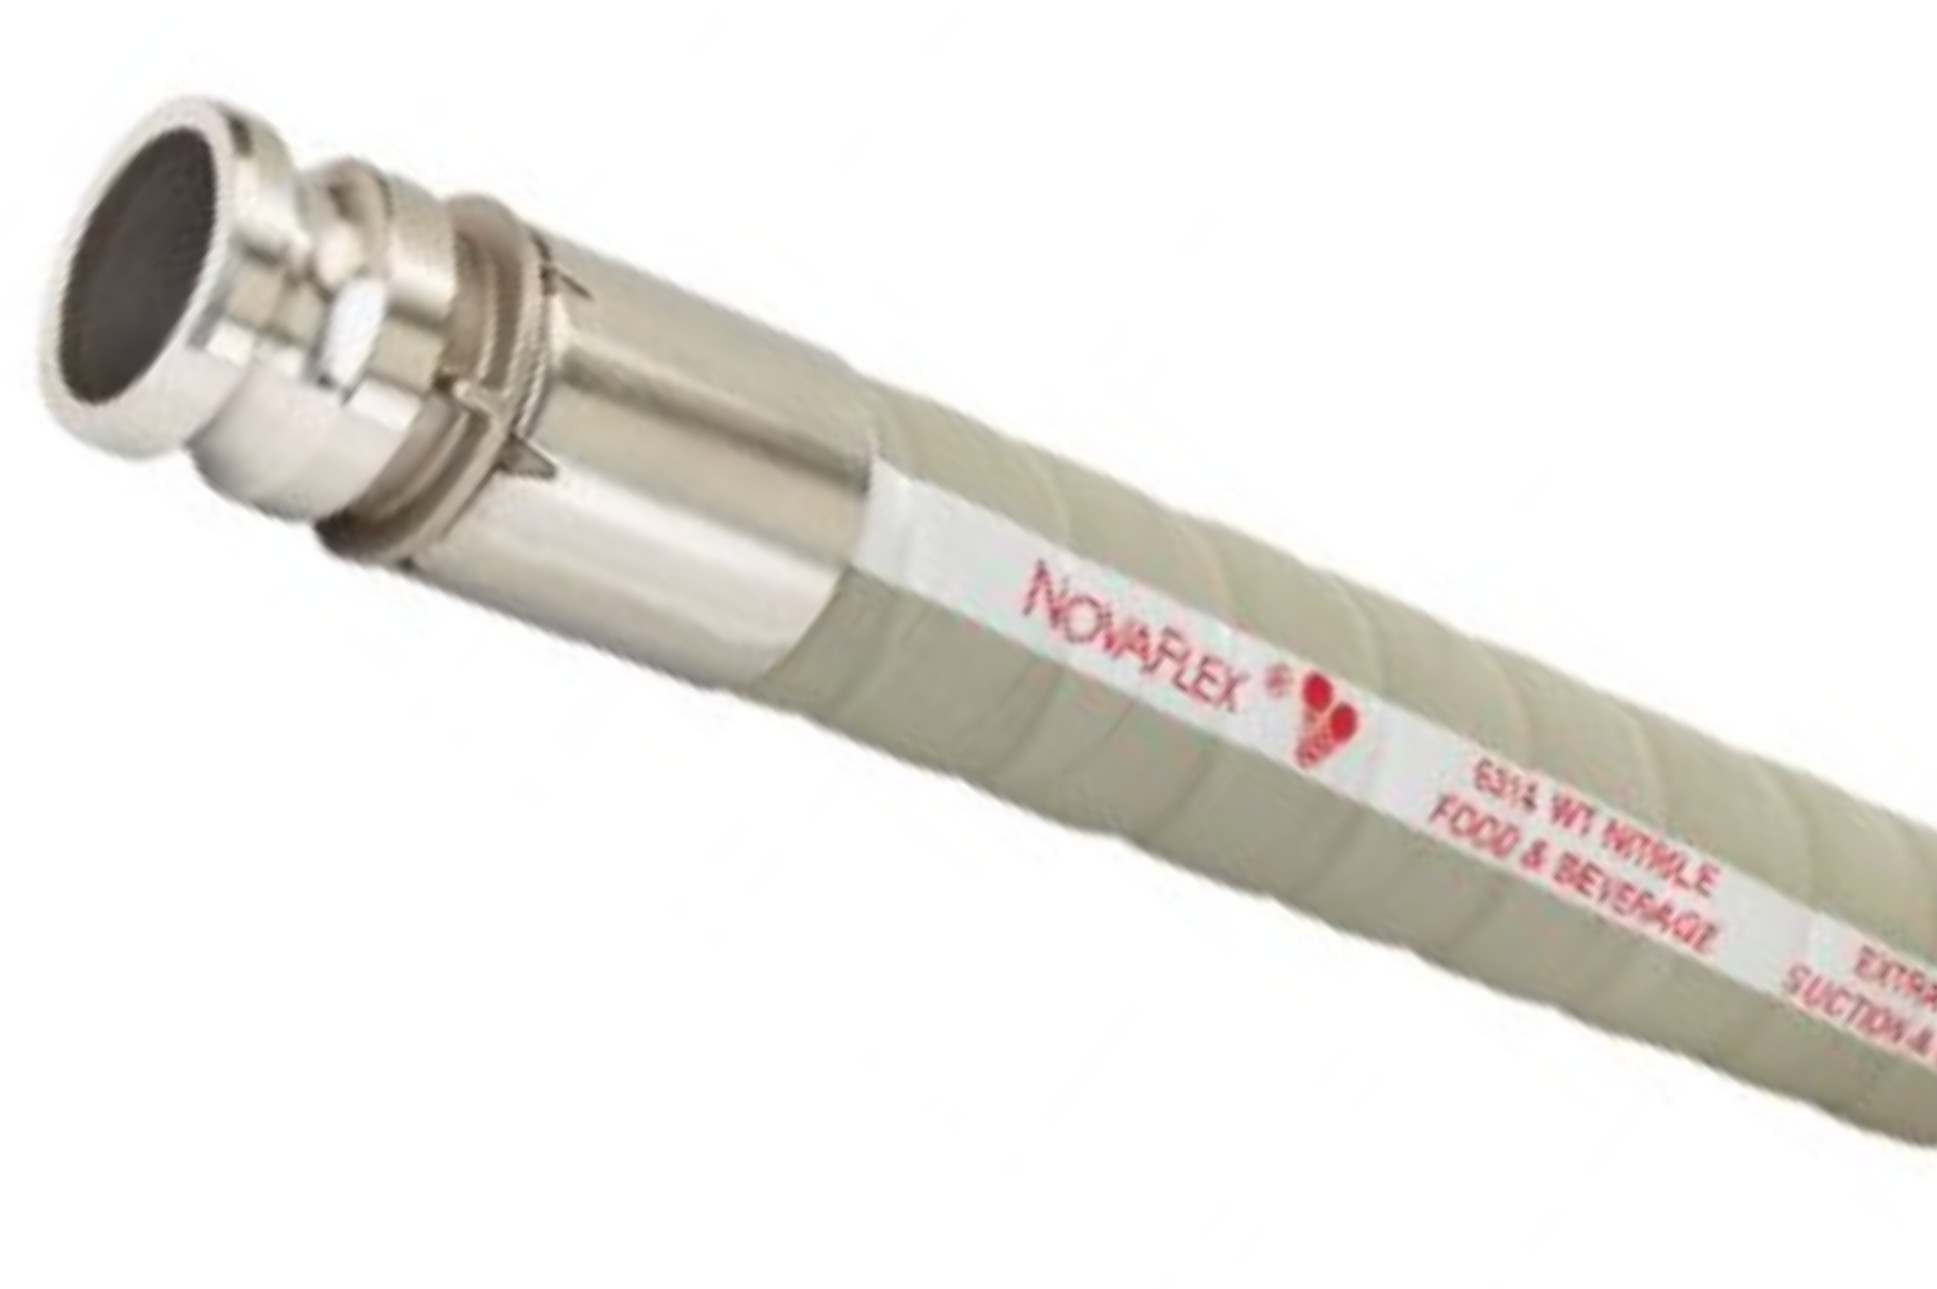 Hossi's Wholesale - Tuyau d'aspirateur flexible, anti-torsion et